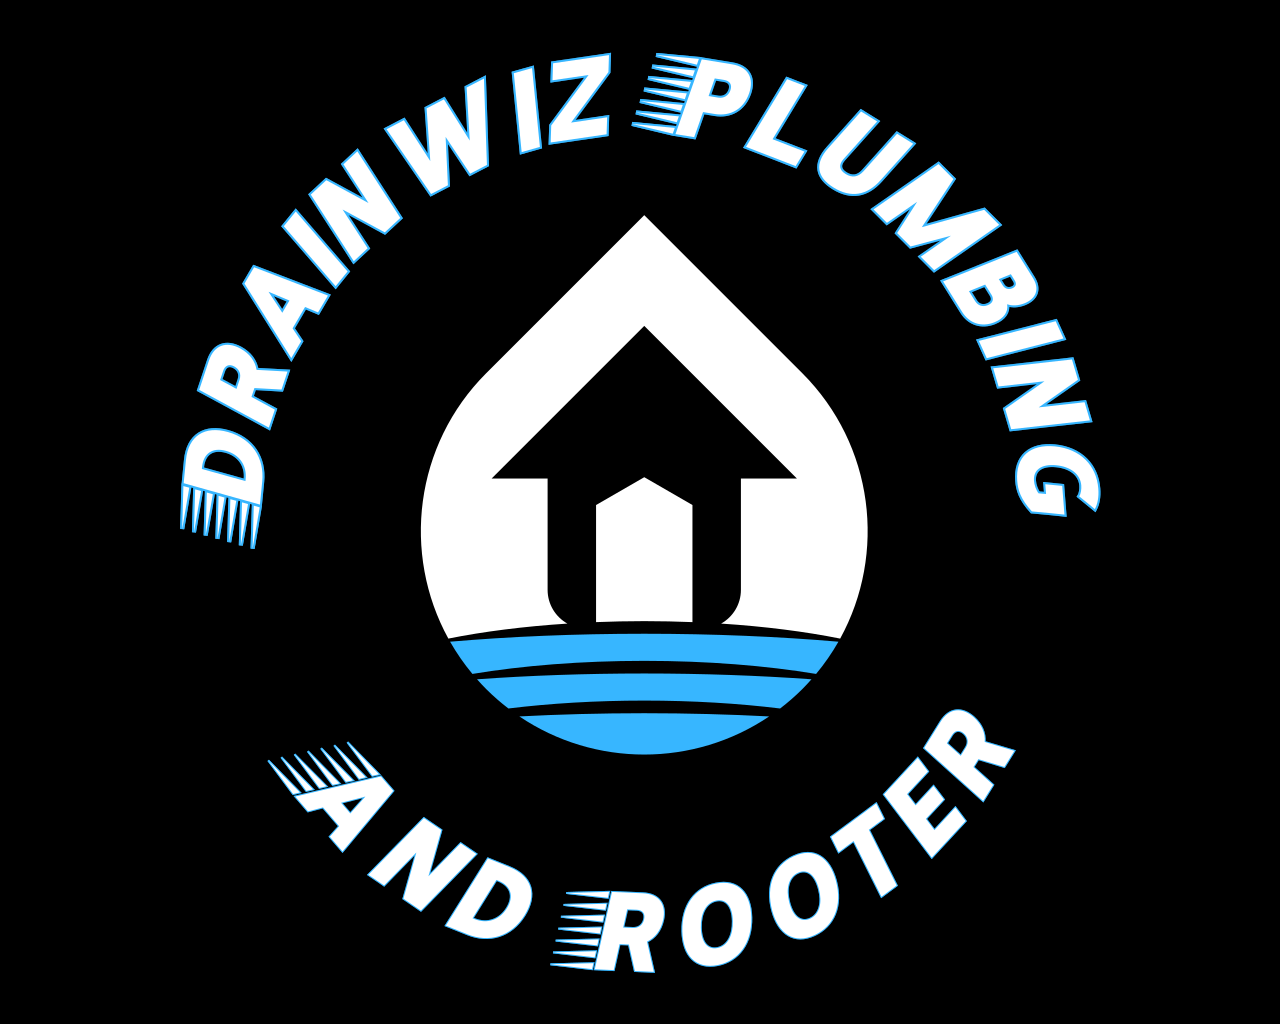 Plumber in San Jose, CA | DrainWiz Plumbing and Rooter's logo